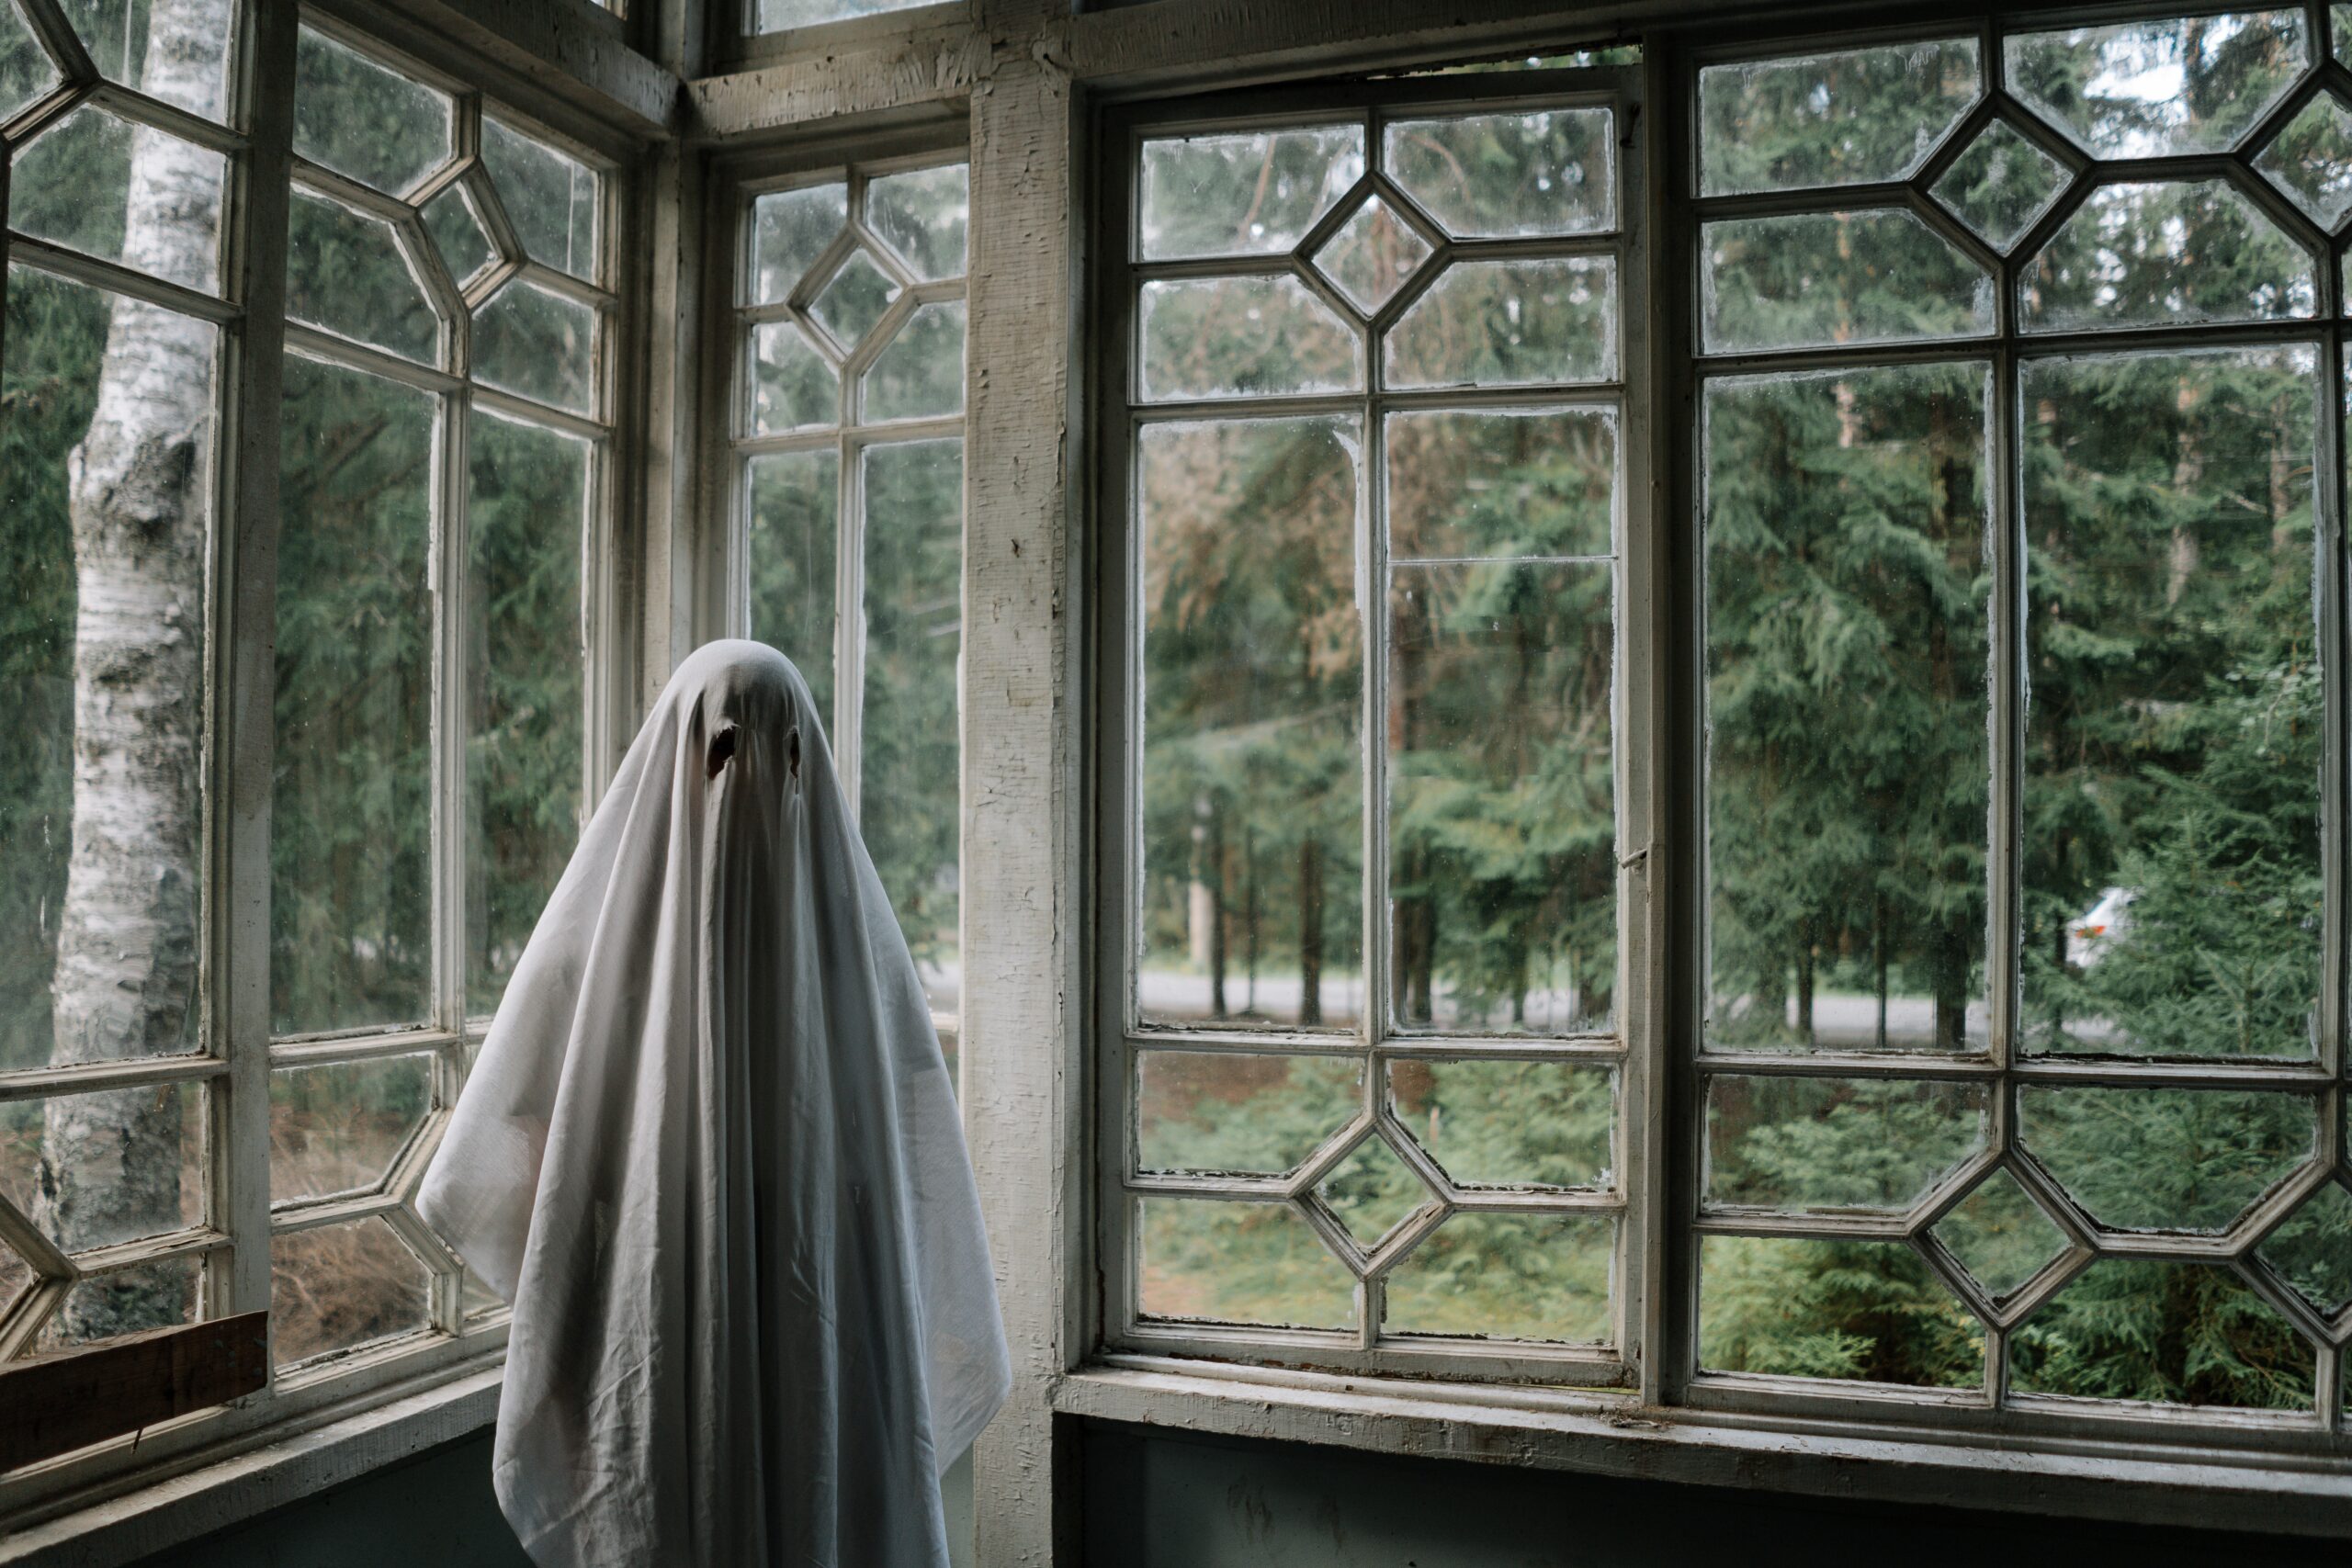 Auf dem Bild ist eine Person zu erkennen, die als Geist verkleidet ist. Diese steht in einem leeren Raum, vor einer Fensterfront. Durch die Fenster kann man einen Wald sehen.